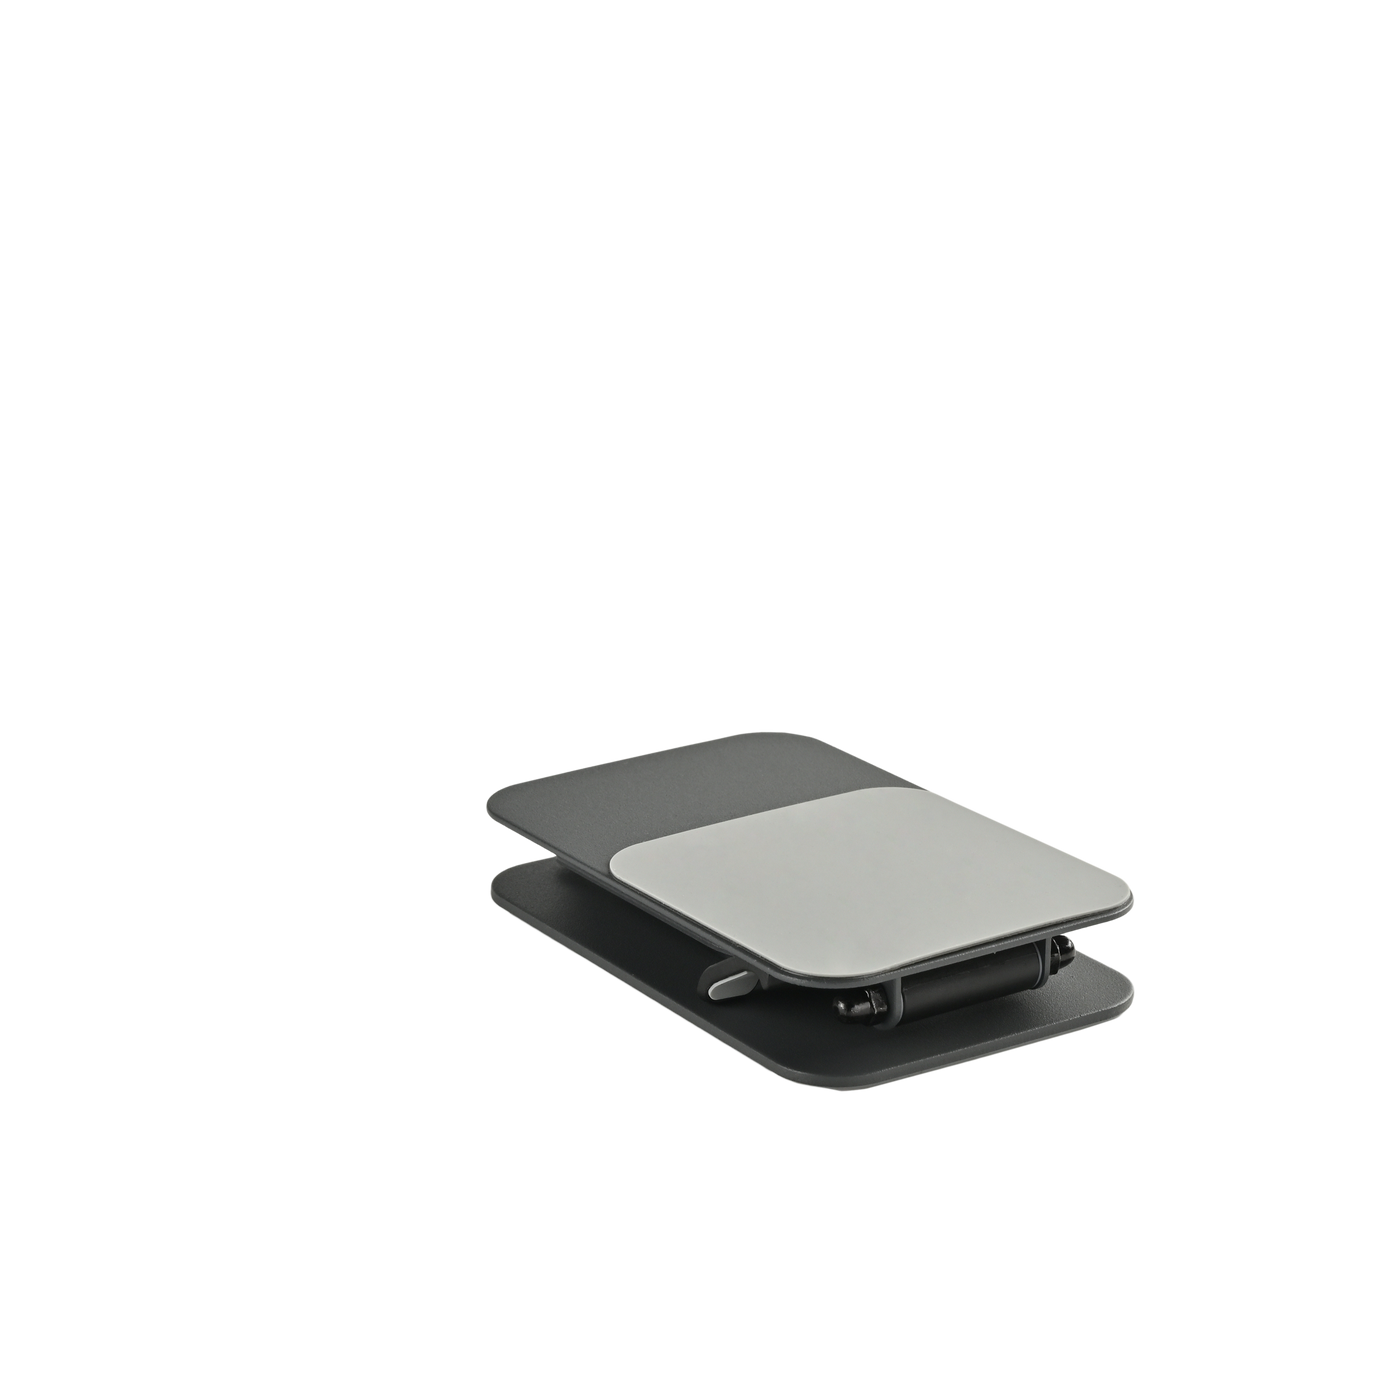 ELECOGO Aluminum Alloy Desktop Folding Phone Stand with 360-Degree Rotating Base